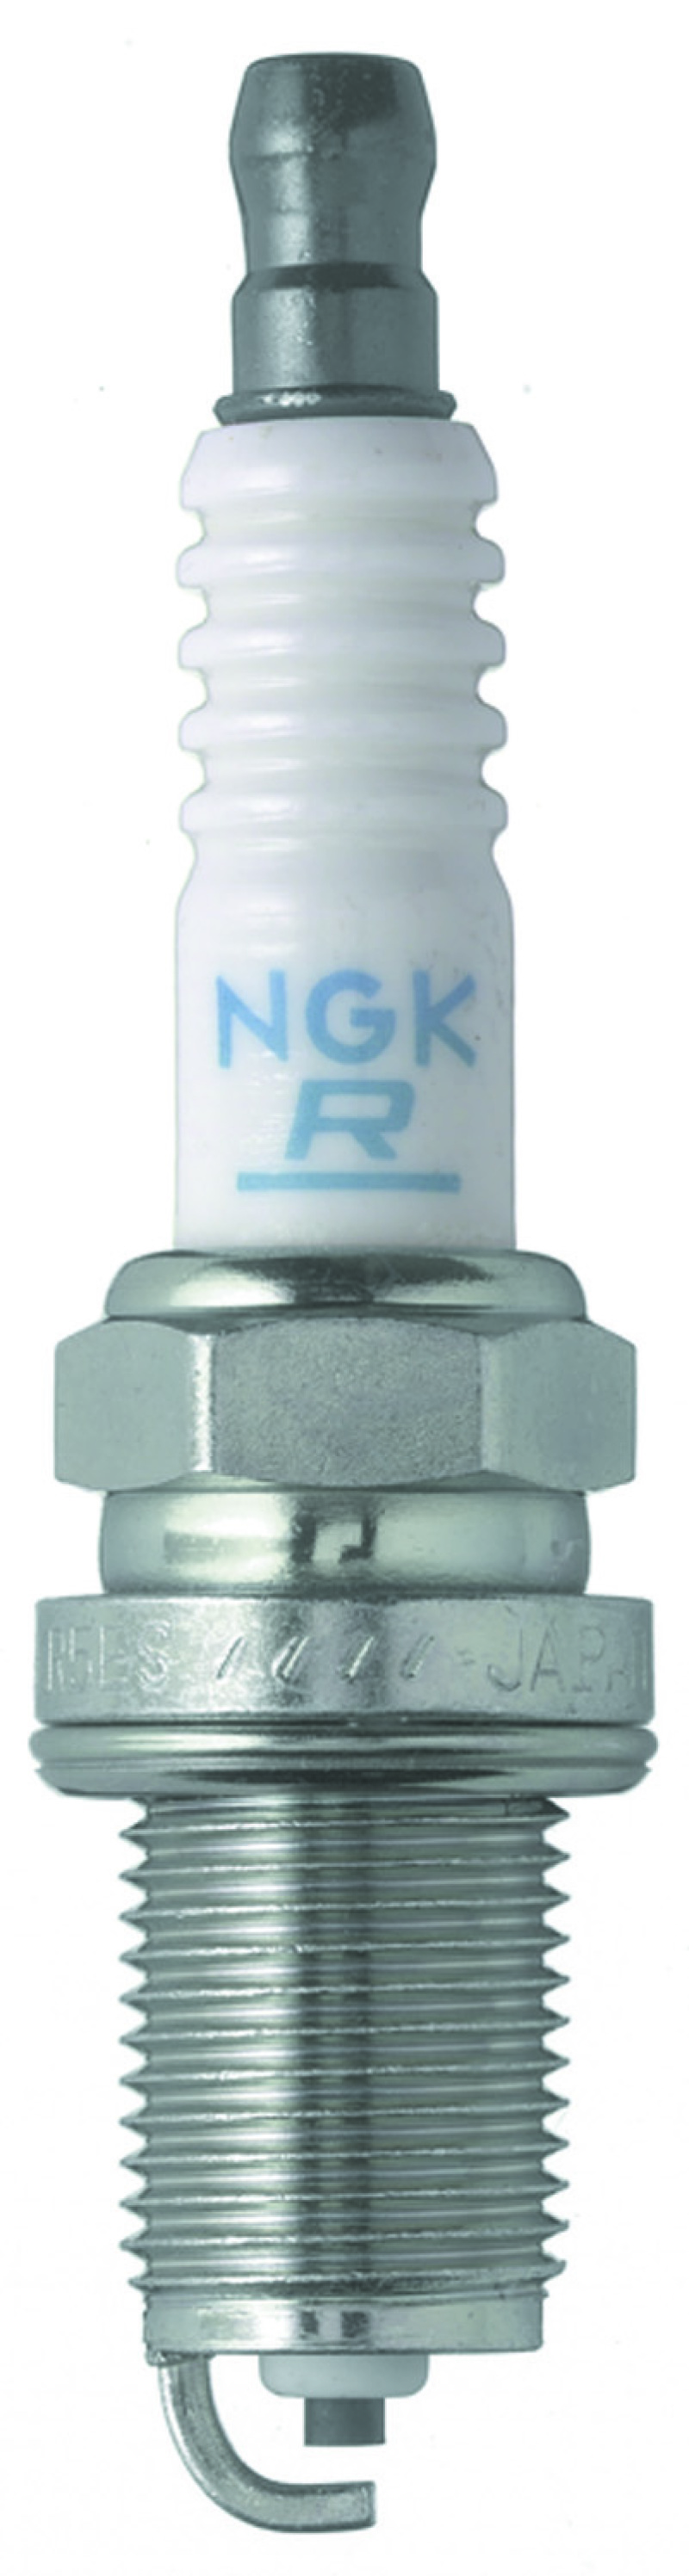 NGK BLYB Spark Plug Box of 6 (BKR5E) - 6719